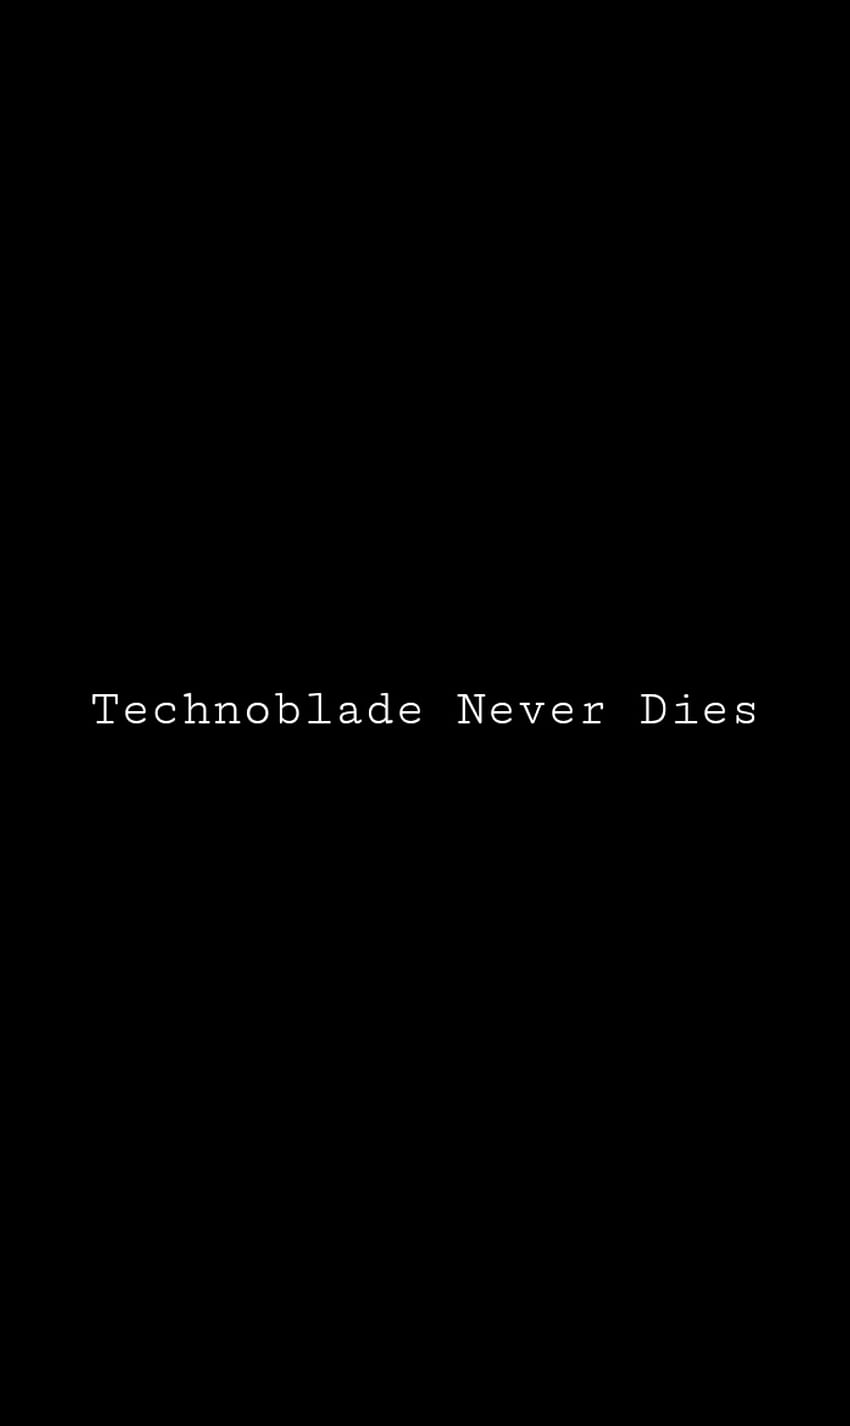 🐷👑- Technoblade out 🍃- wallpaper by : @kingmahdiz_art